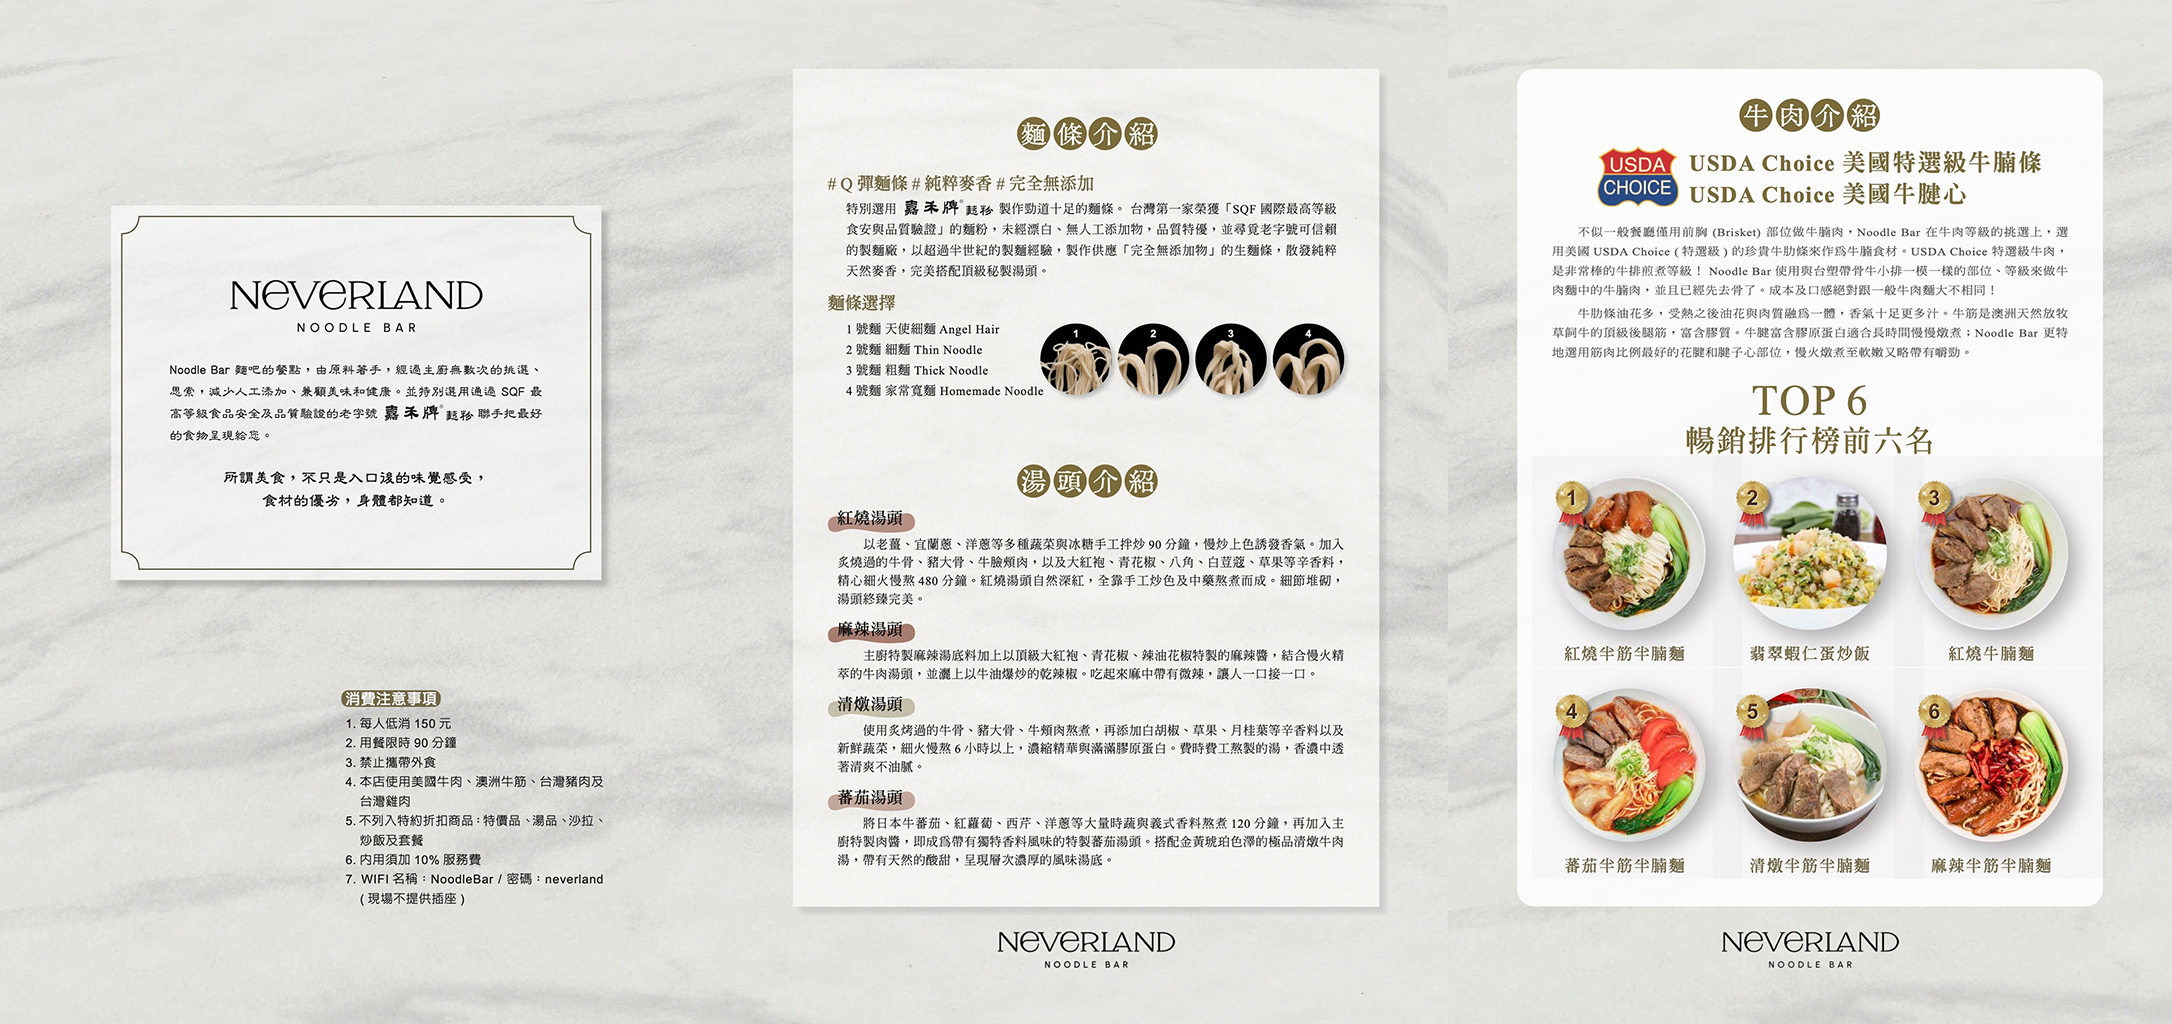 【南港美食】Neverland Noodle Bar 麵吧 南港牛肉麵天花板推薦！生意超好記得先訂位預約